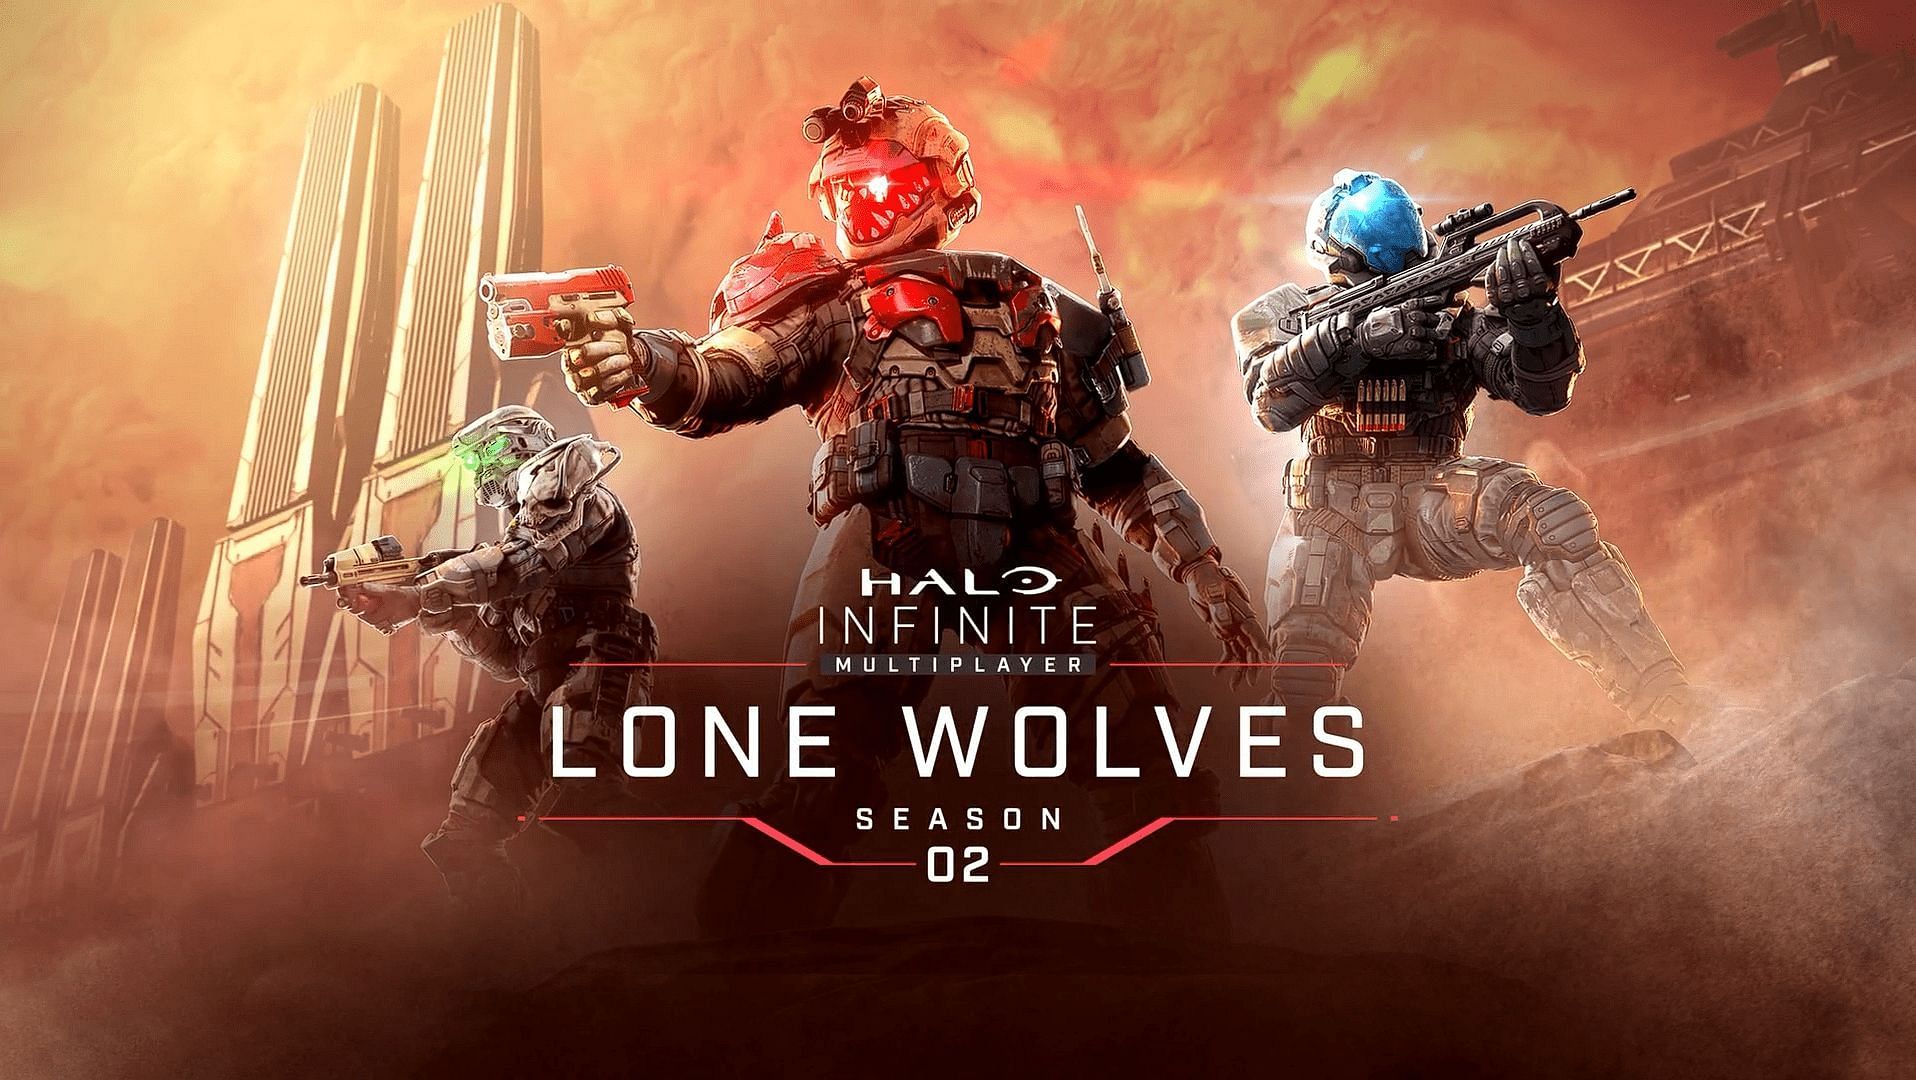 Imagen del tráiler de la temporada 2 de Halo Infinite: Lone Wolves (Imagen a través de 343 Industries)